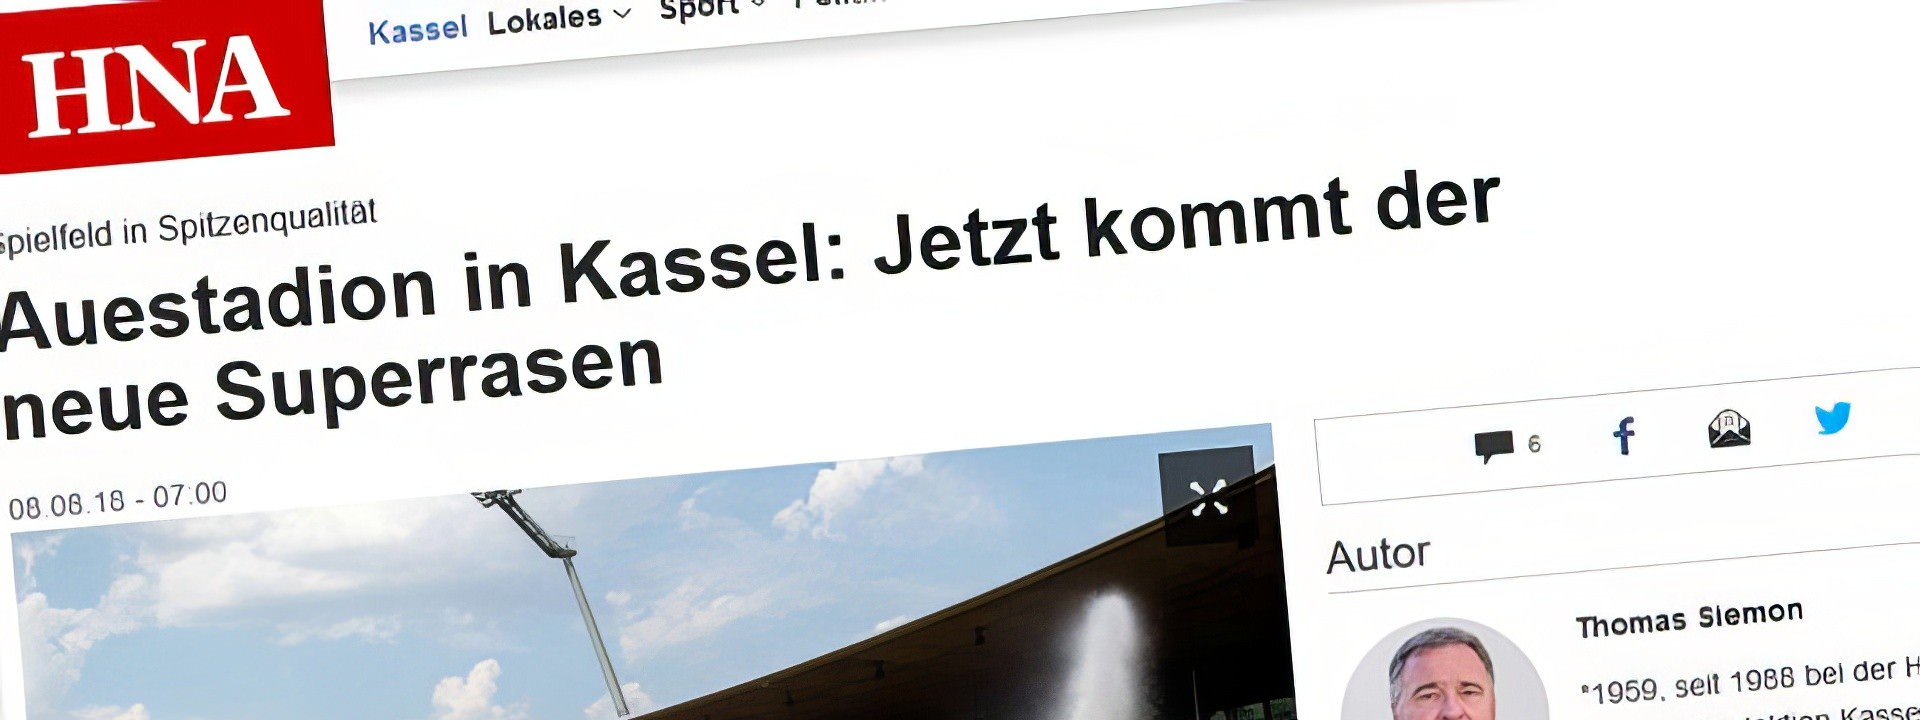 Kassel: Auestadion Neuer Superrasen